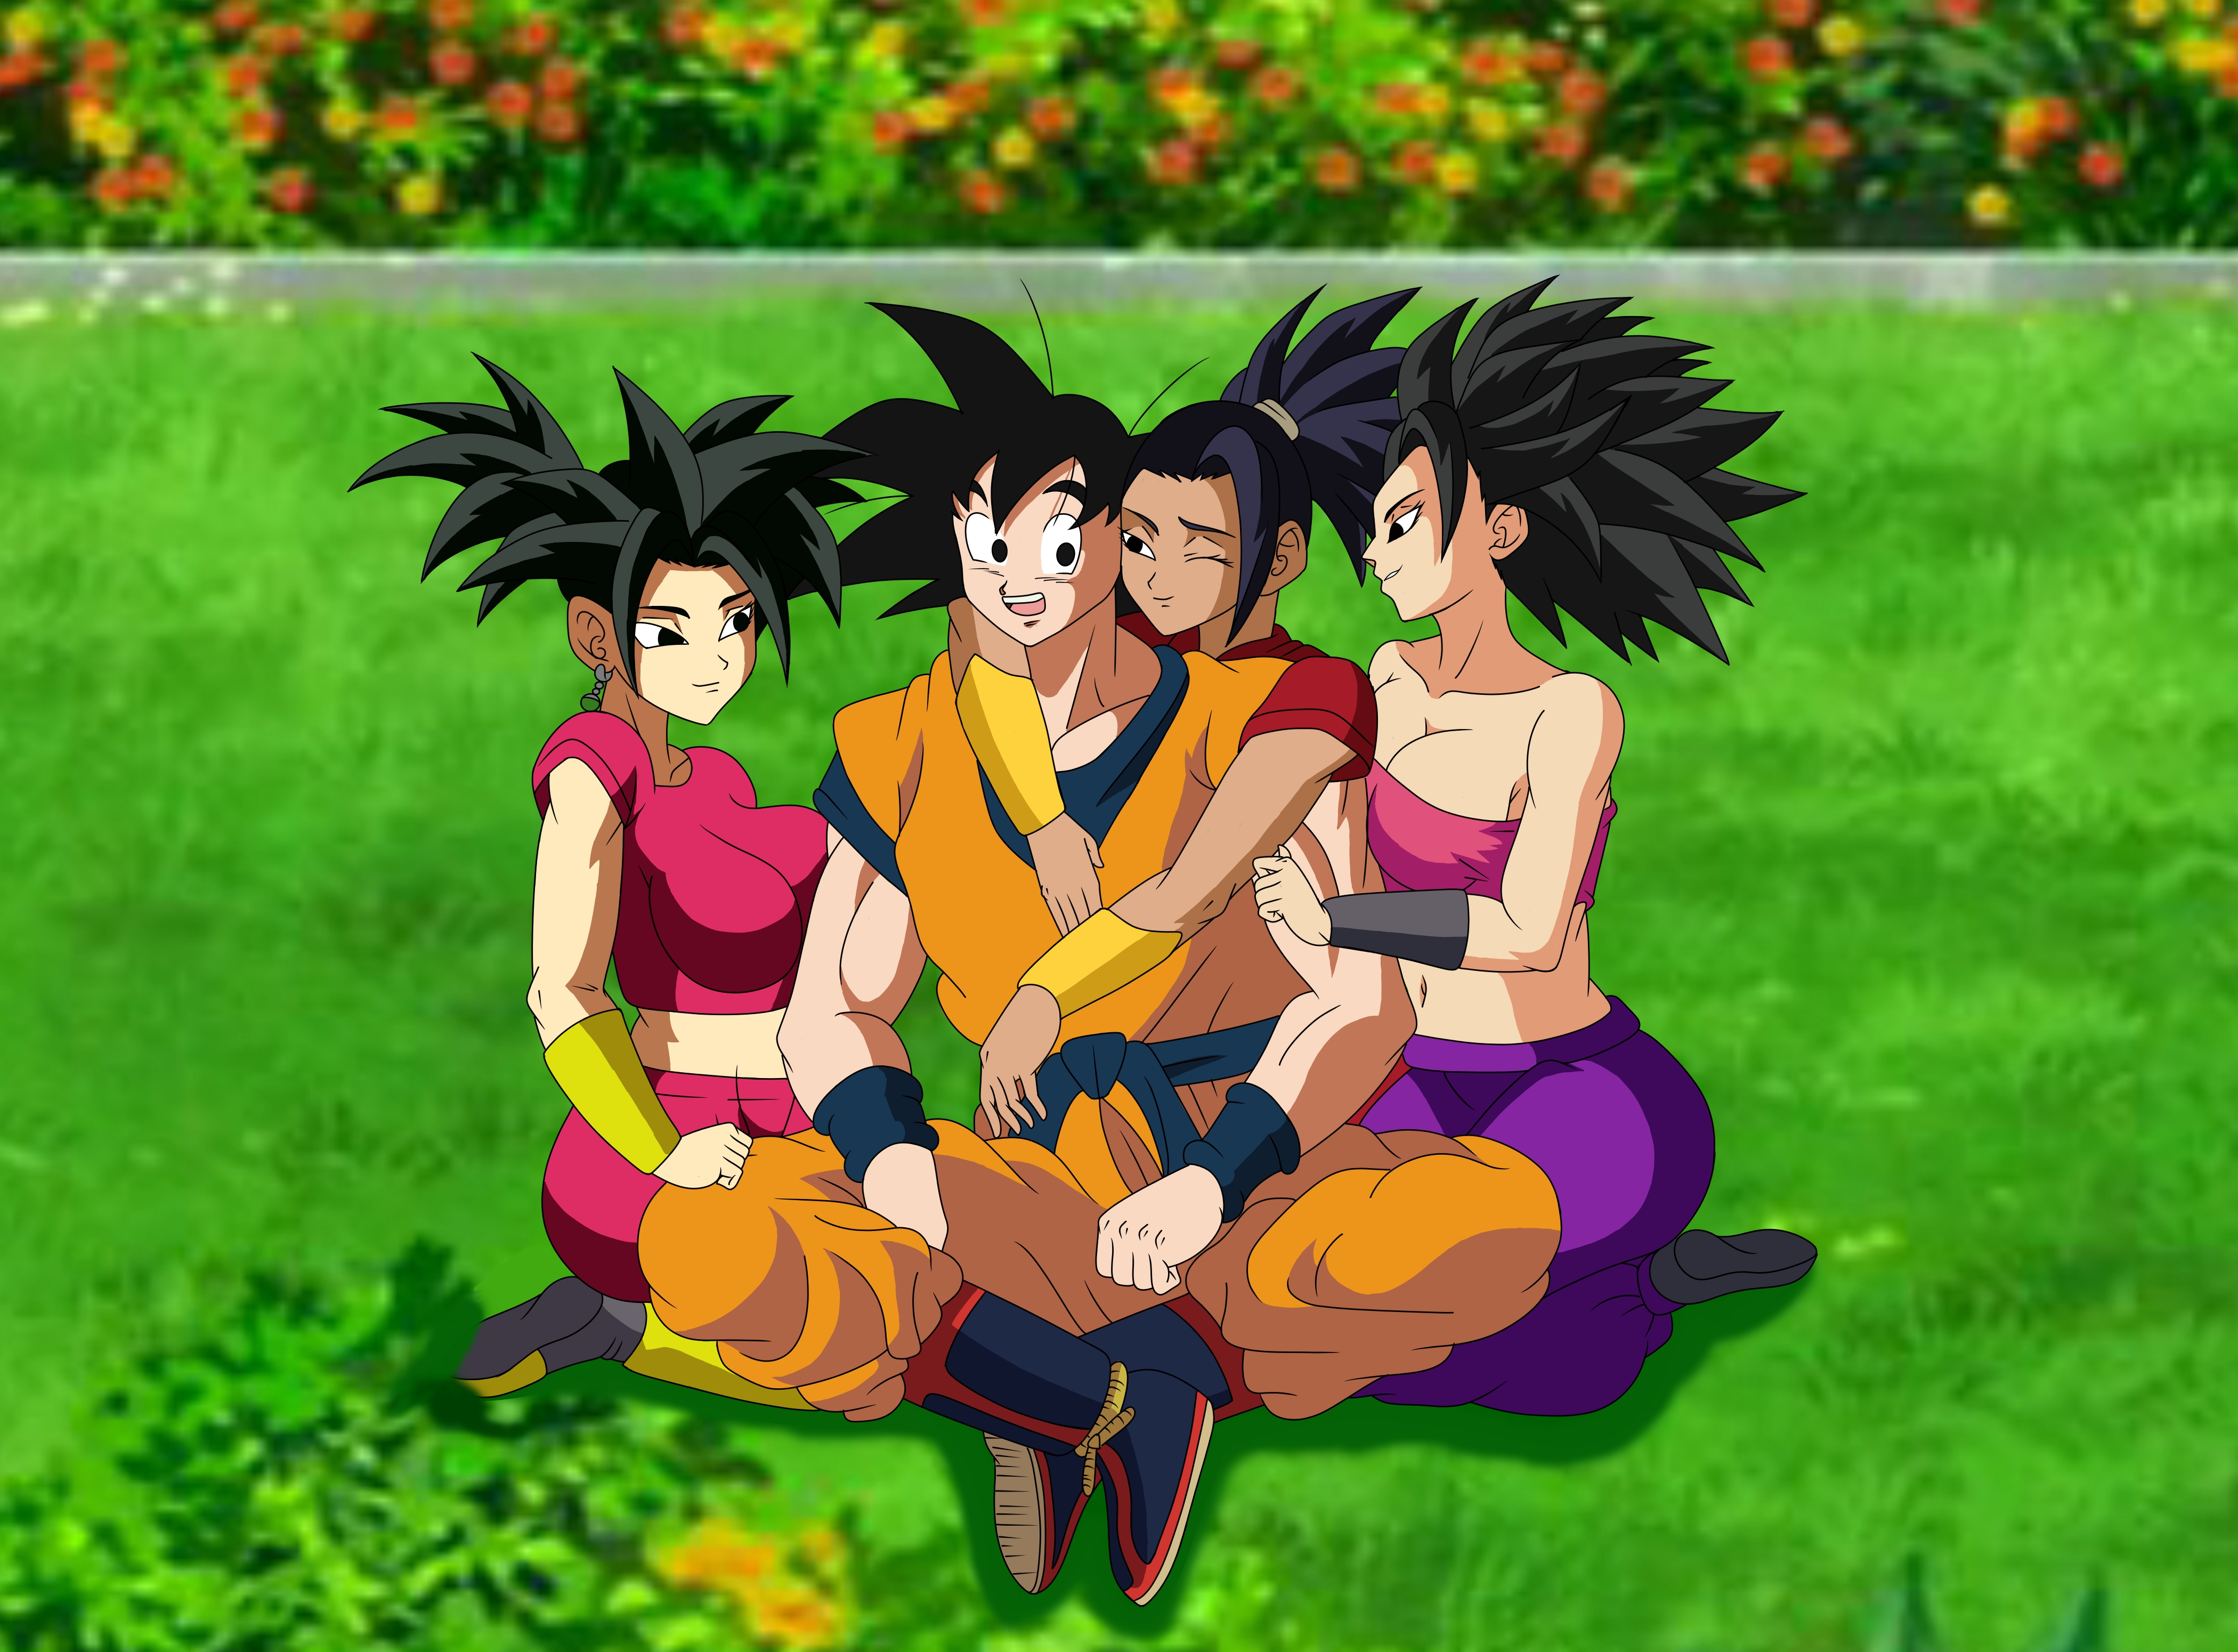 Goku traído por seus amigos e Harem. - novos design para Caulifla